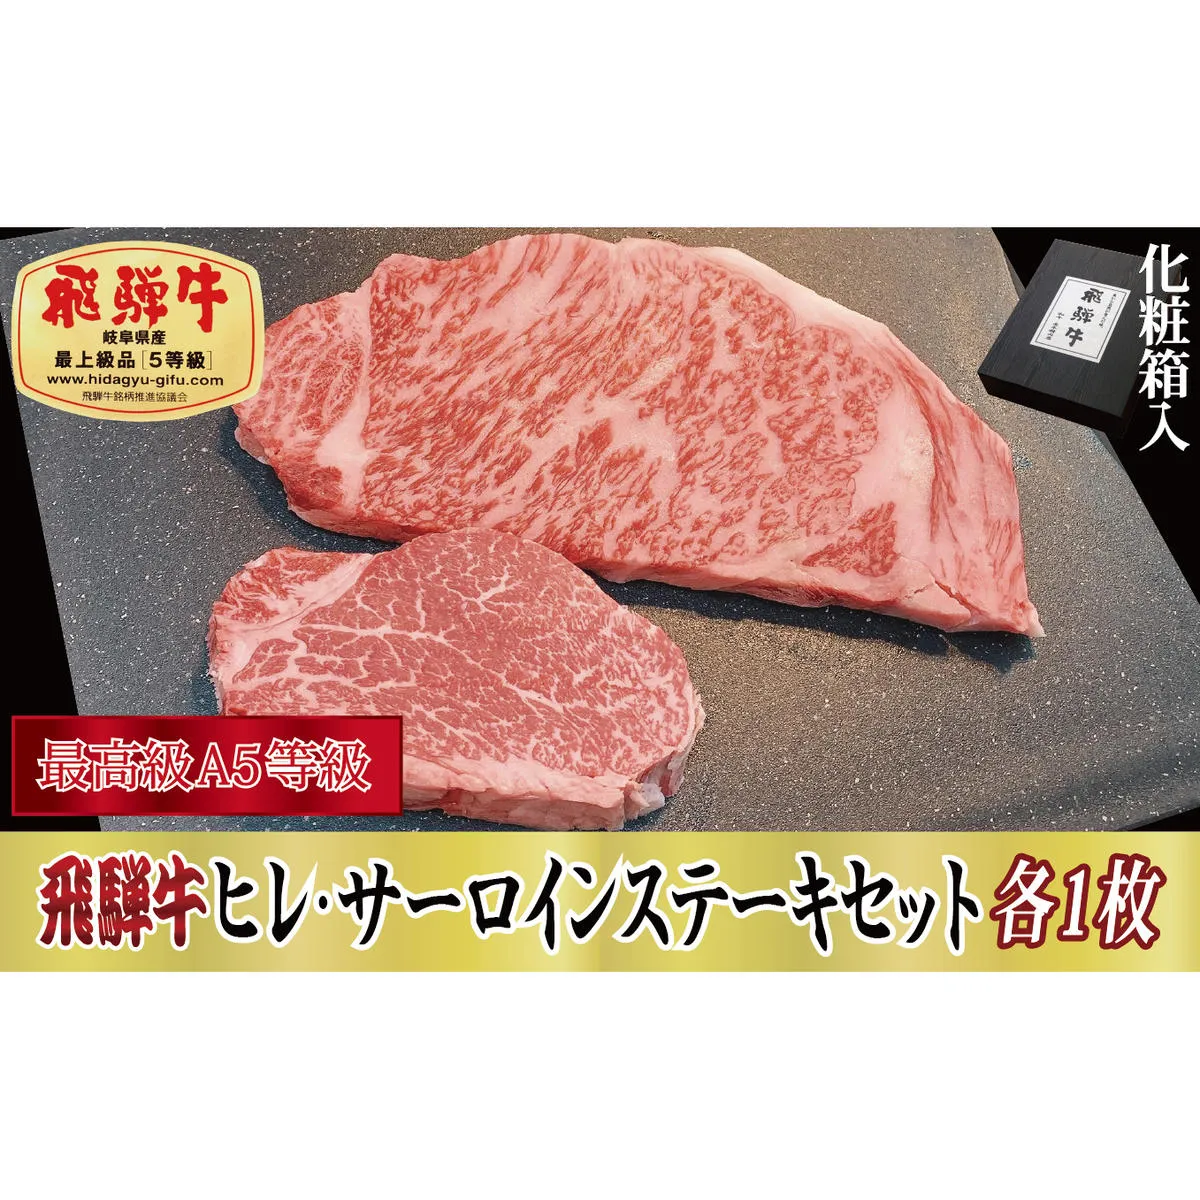 【化粧箱入り・最高級A5等級】飛騨牛ヒレ（120g）・サーロイン（200g）セット